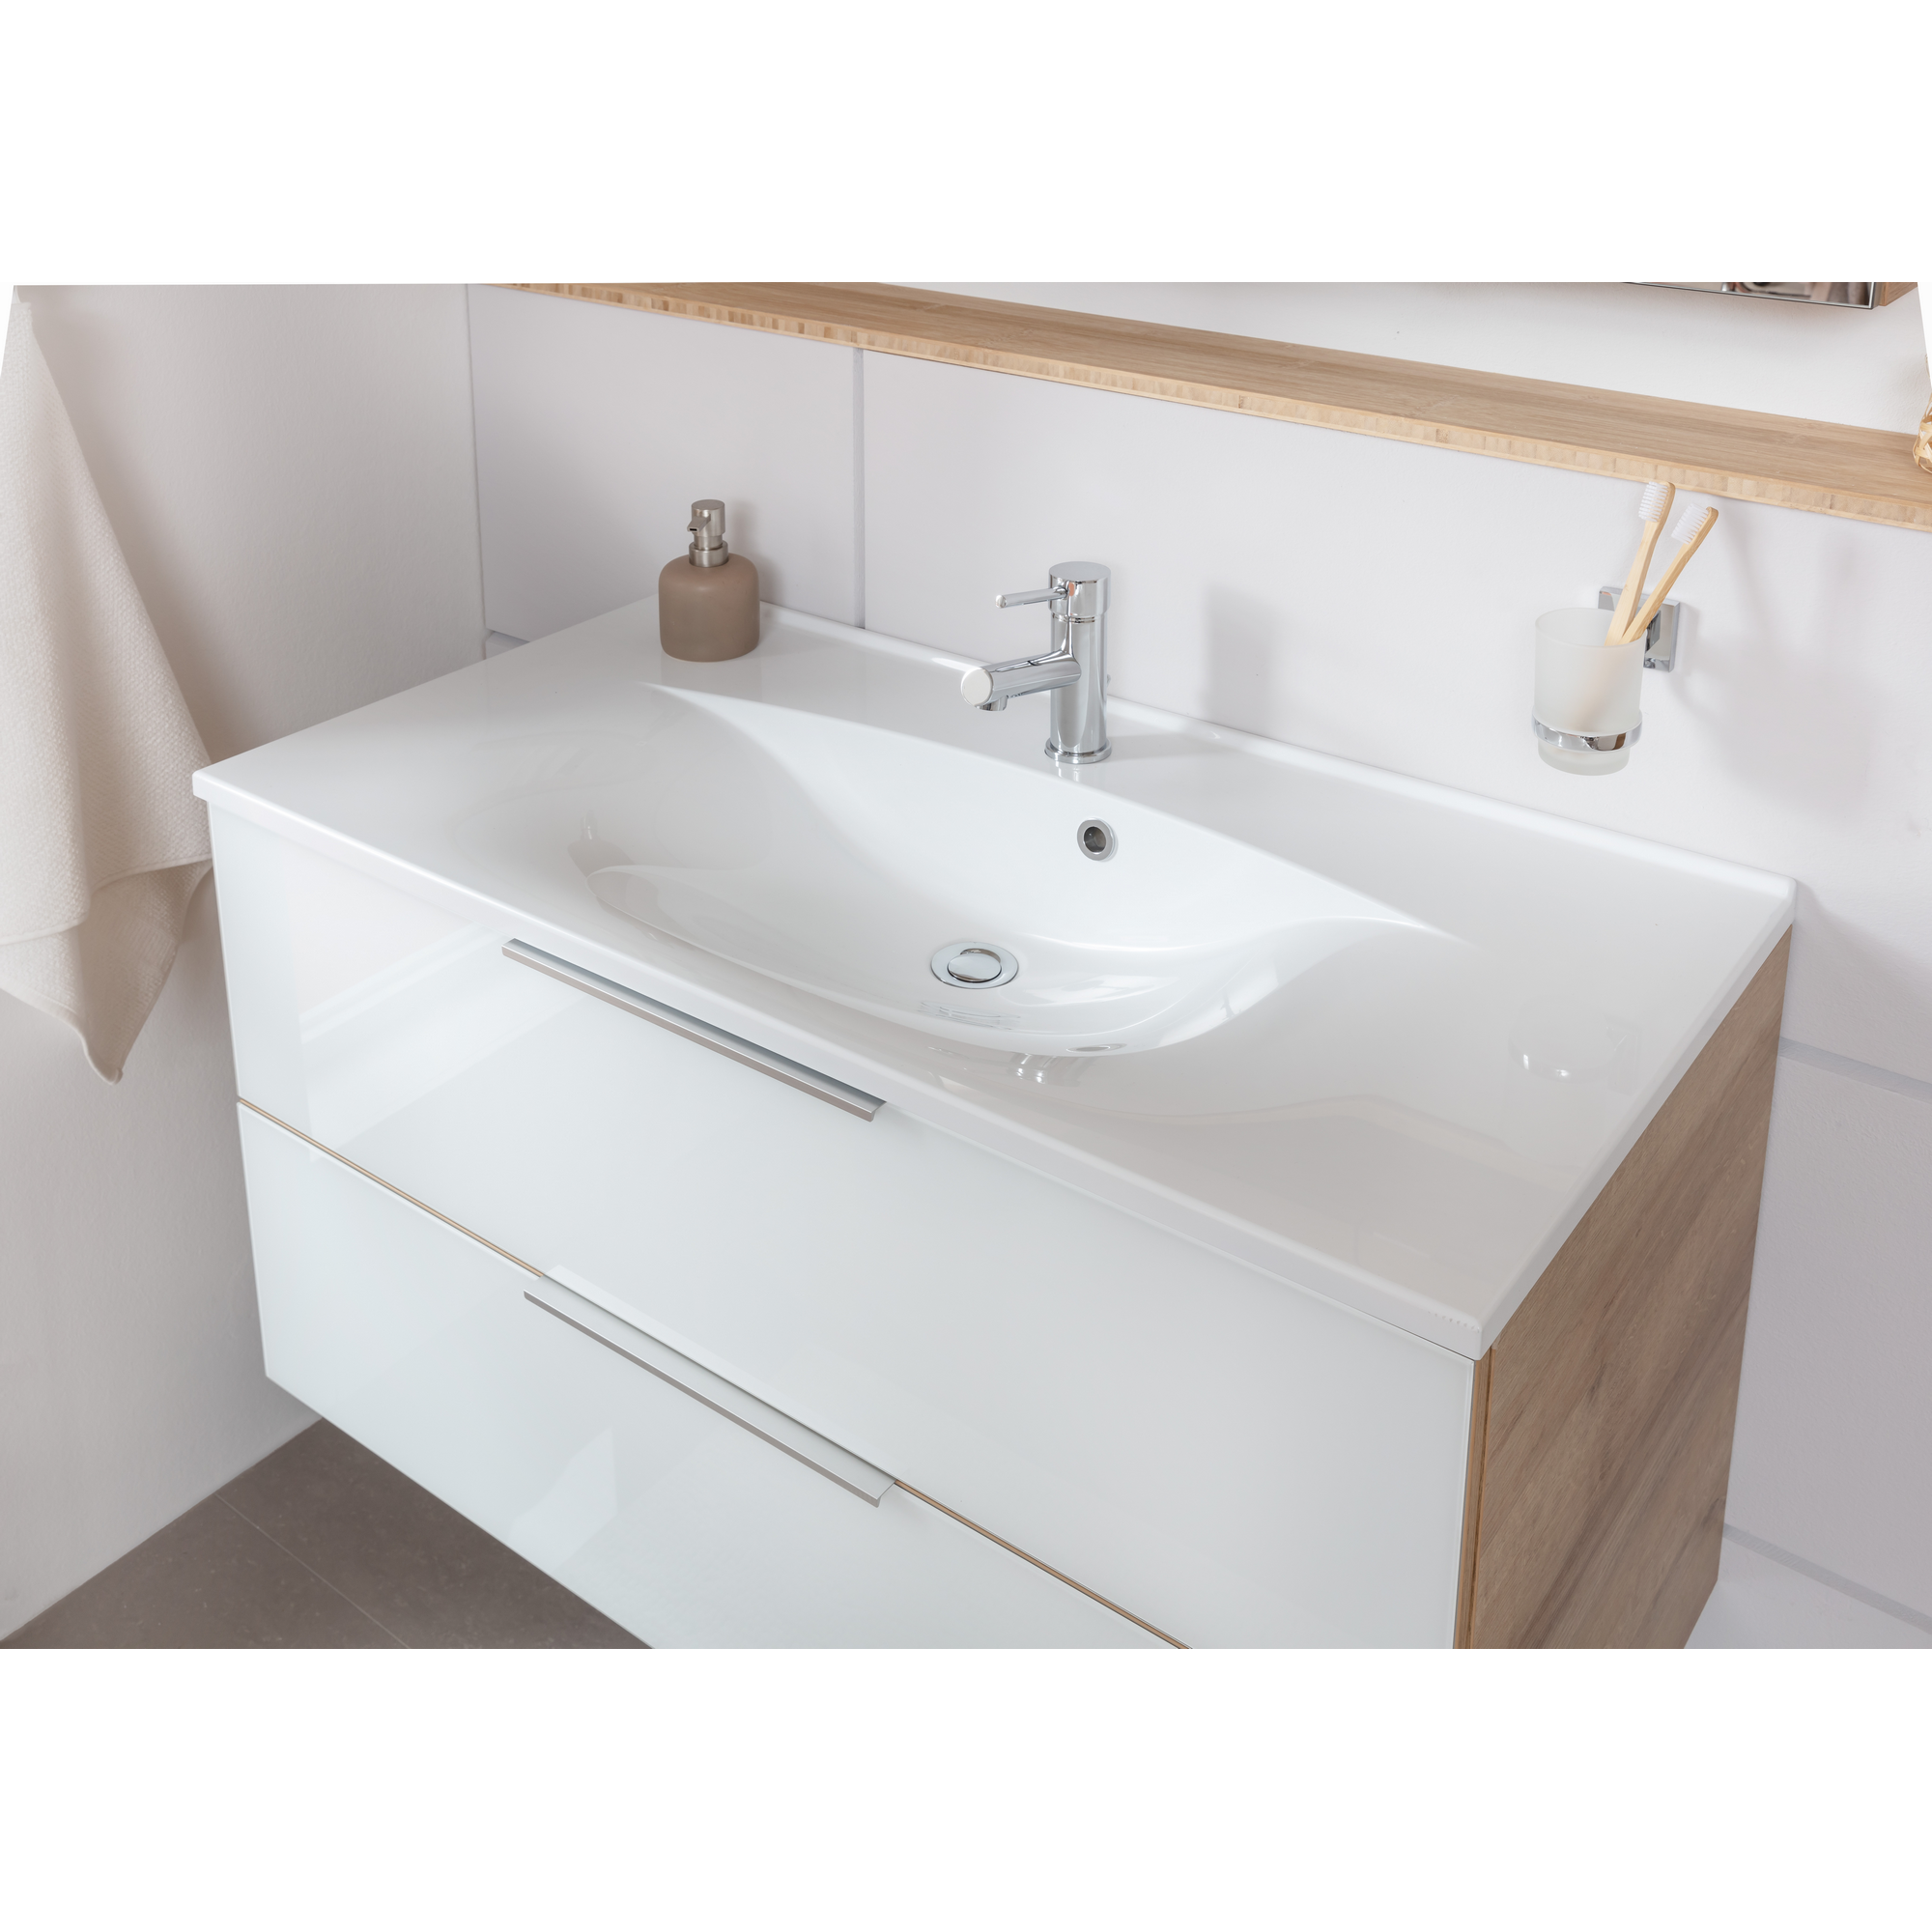 Waschbecken mit Unterschrank 'B.Brillant' Asteiche/weiß 100 x 56 x 50 cm + product picture